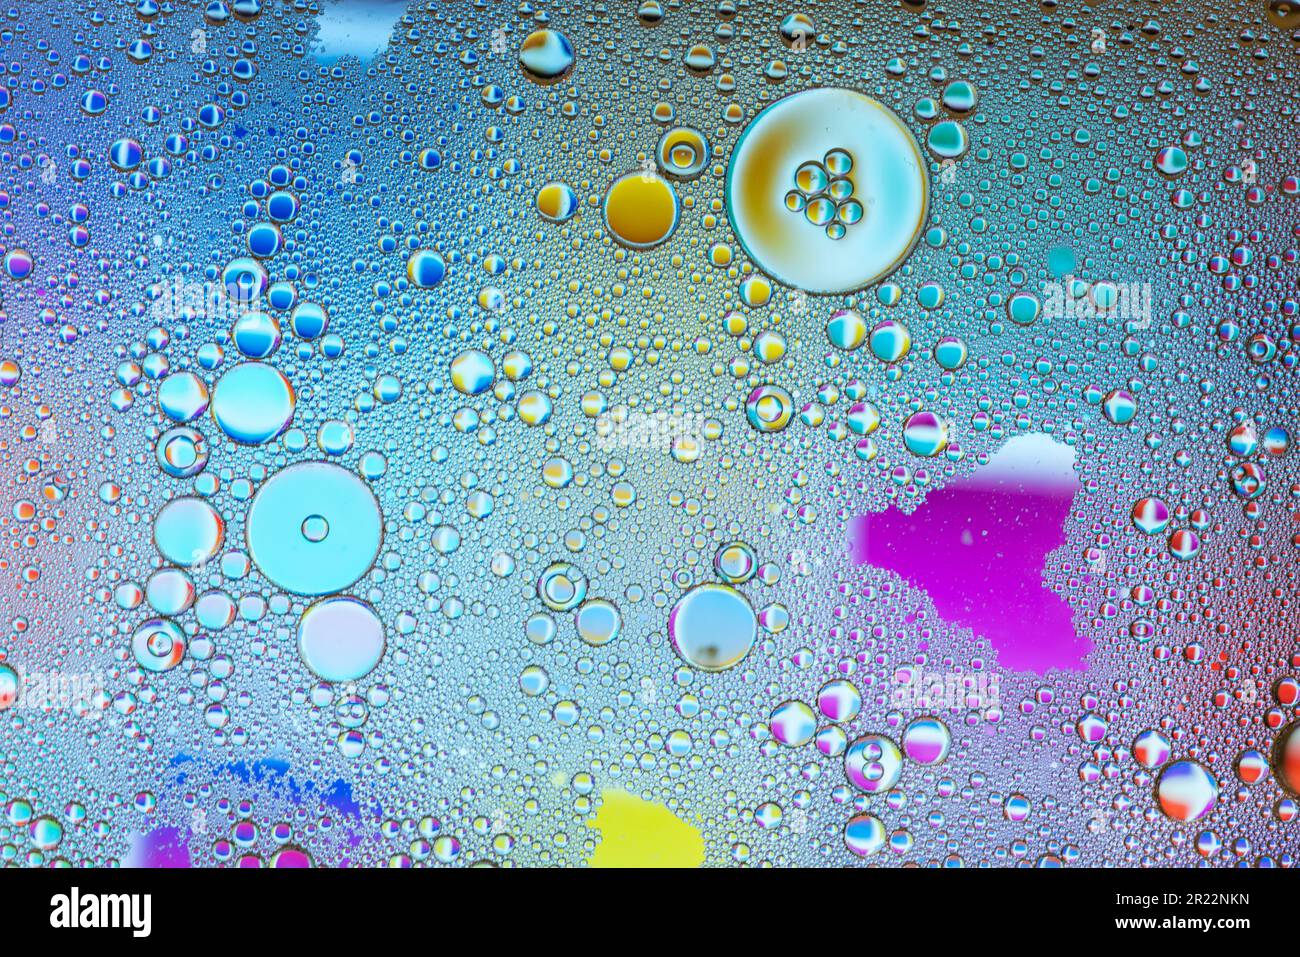 Detalle de burbujas y gotas de agua de varios colores Stock Photo